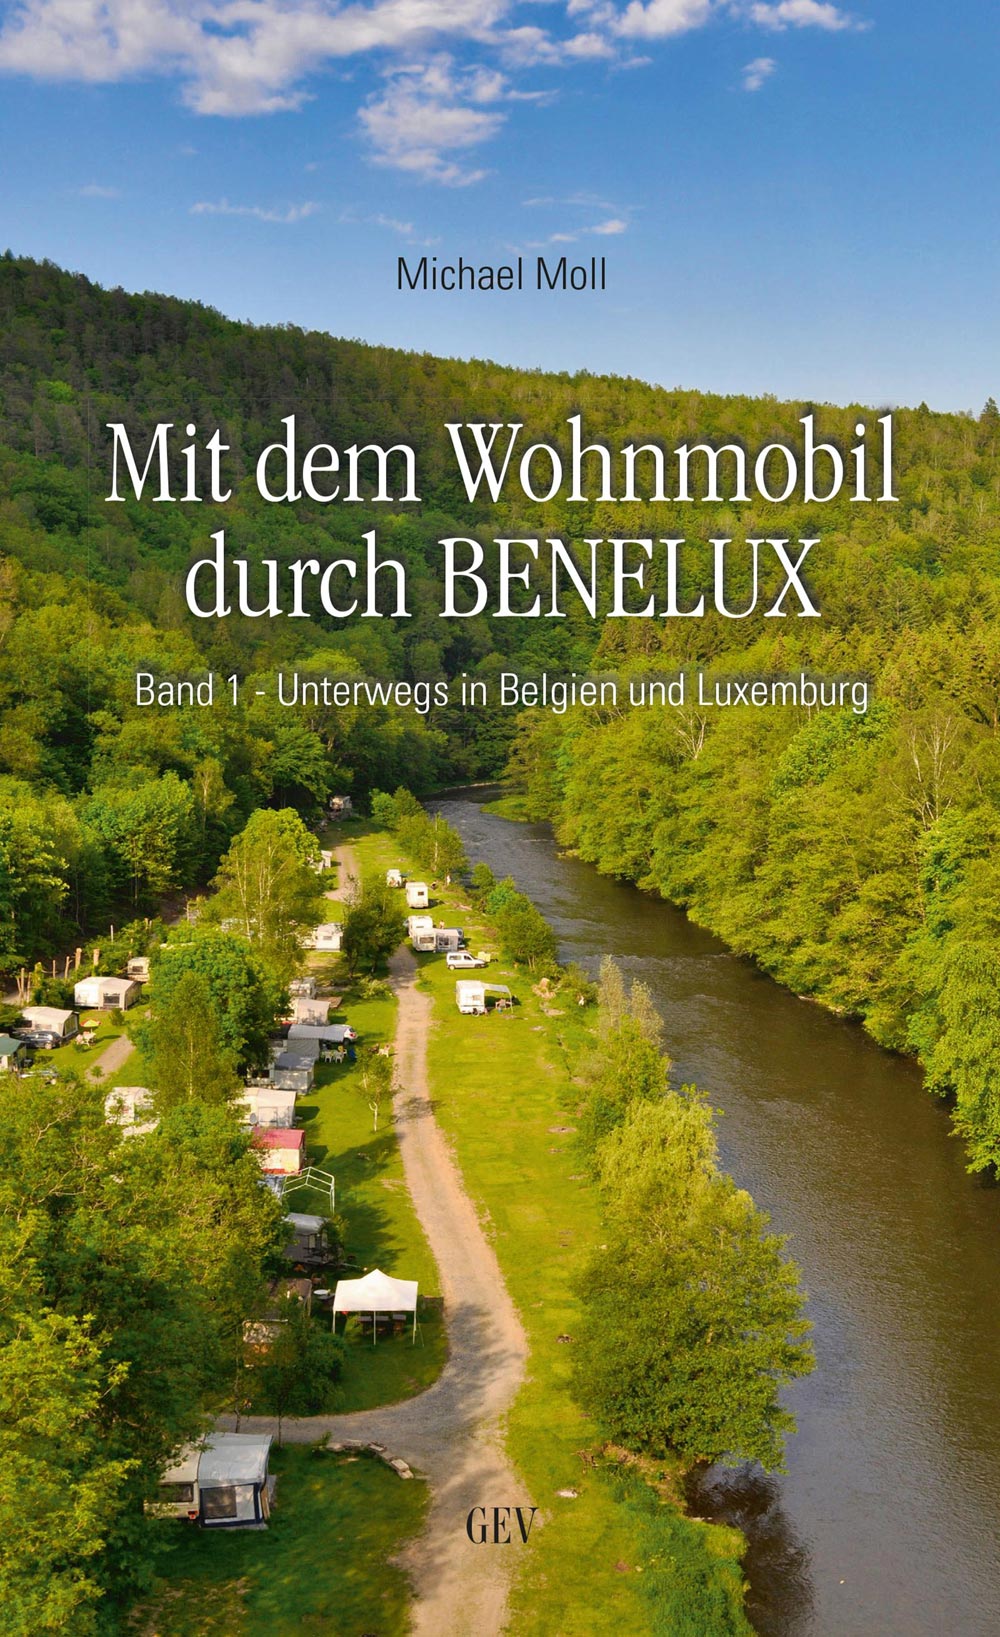 Michael Moll: MIT DEM WOHNMOBIL DURCH BENELUX - Band 1 - Unterwegs in Belgien und Luxemburg